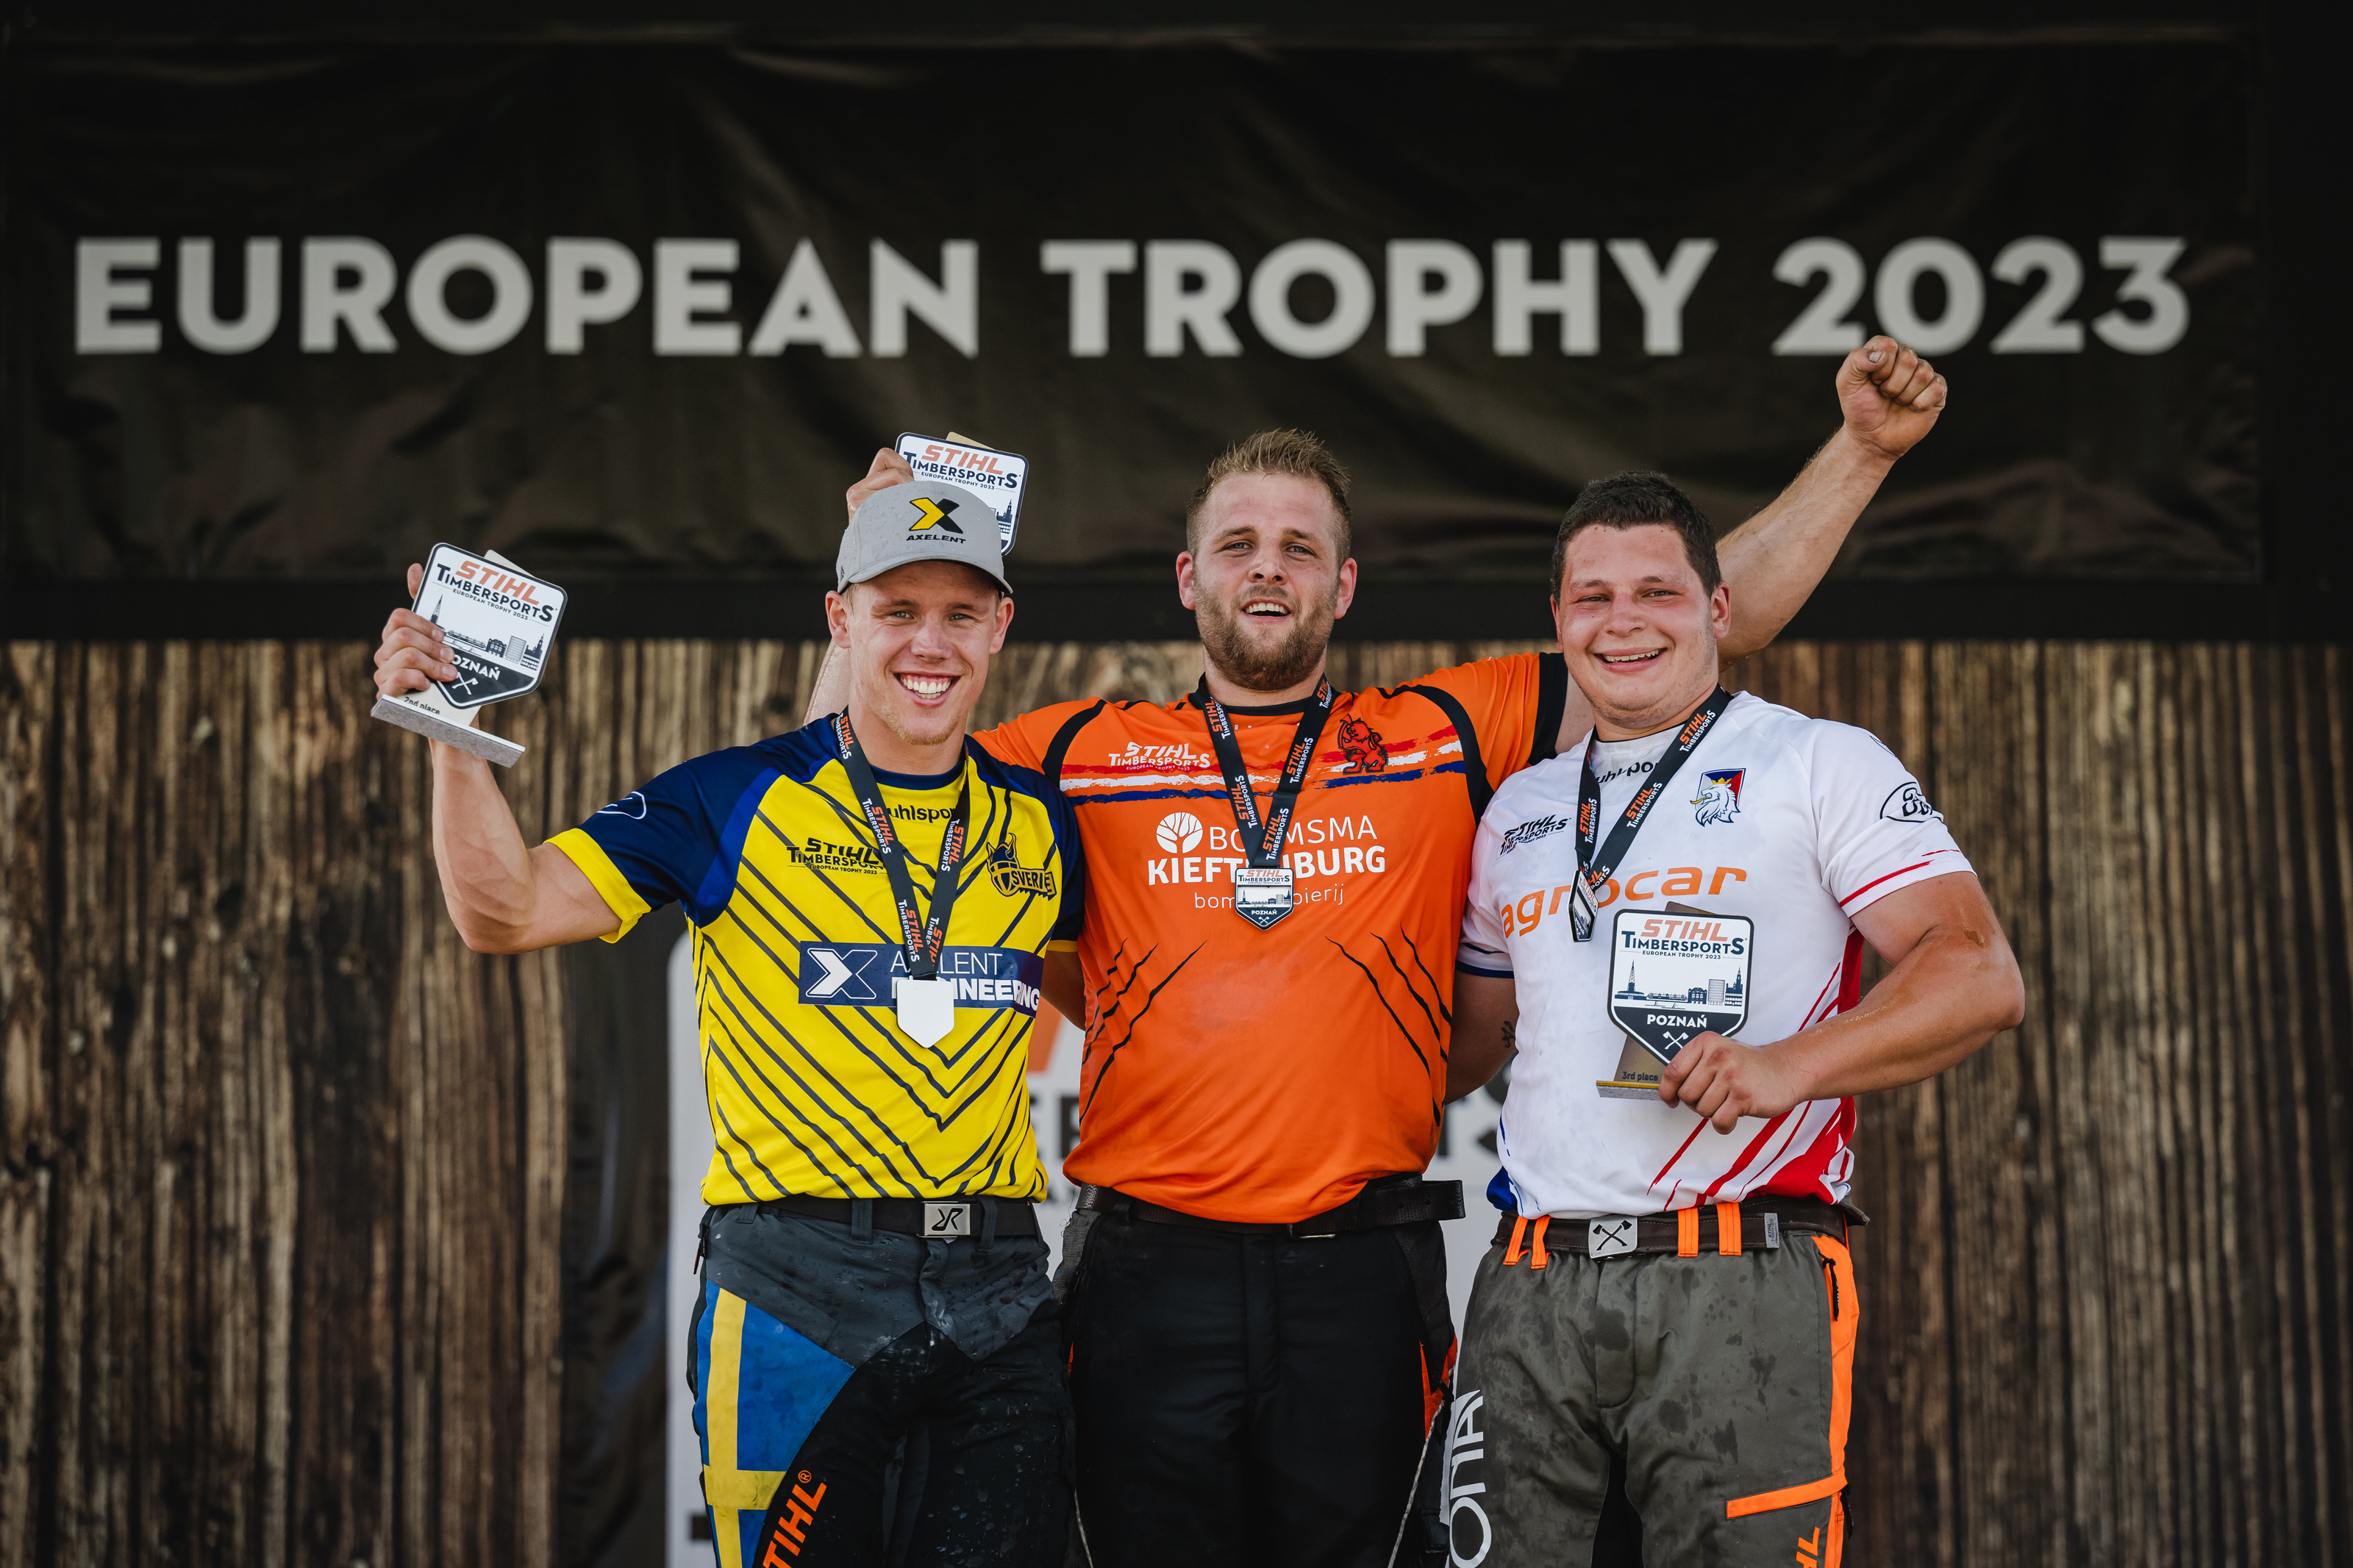 Redmer Knol (Mitte) gewinnt die European Trophy 2023 vor Ferry Svan (links) und Matyáš Klíma (rechts).